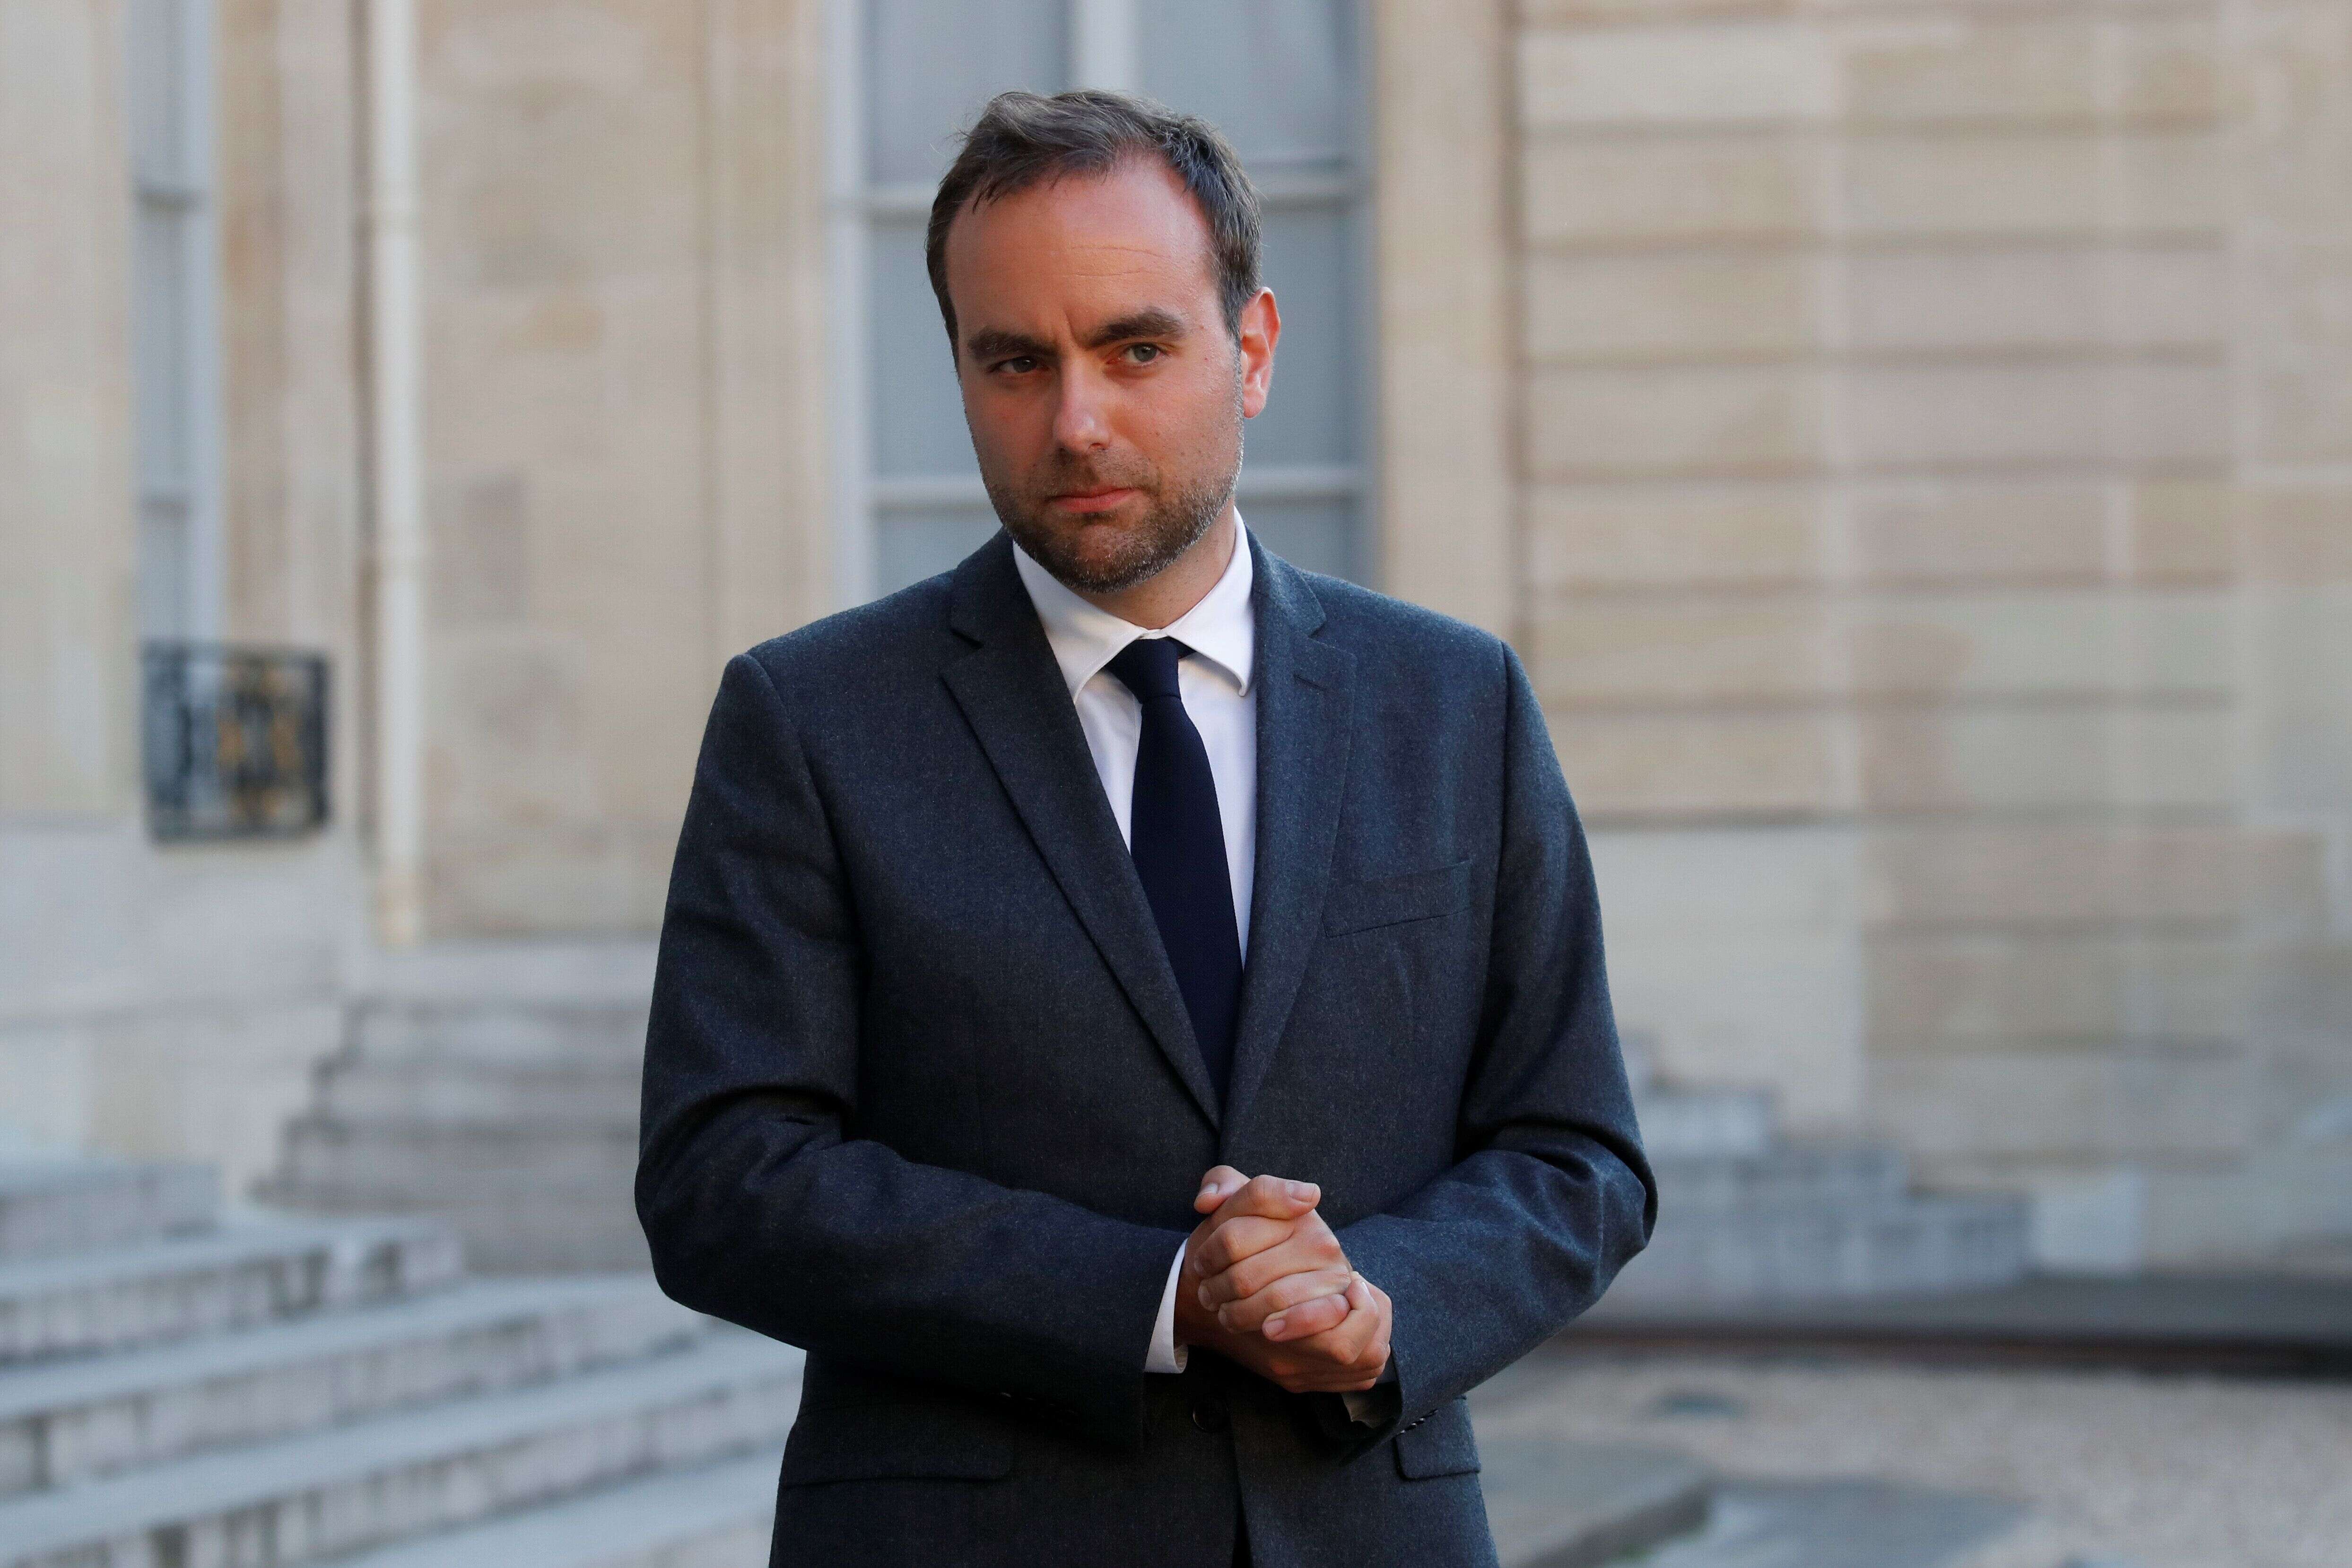 Le ministre des outre-mer Sébastien Lecornu, ici à l'Elysée en mai 2020, est forcé de se défendre après la publication d'une vidéo prise à son ministère lors d'une fête donnée en marge du congrès des maires.